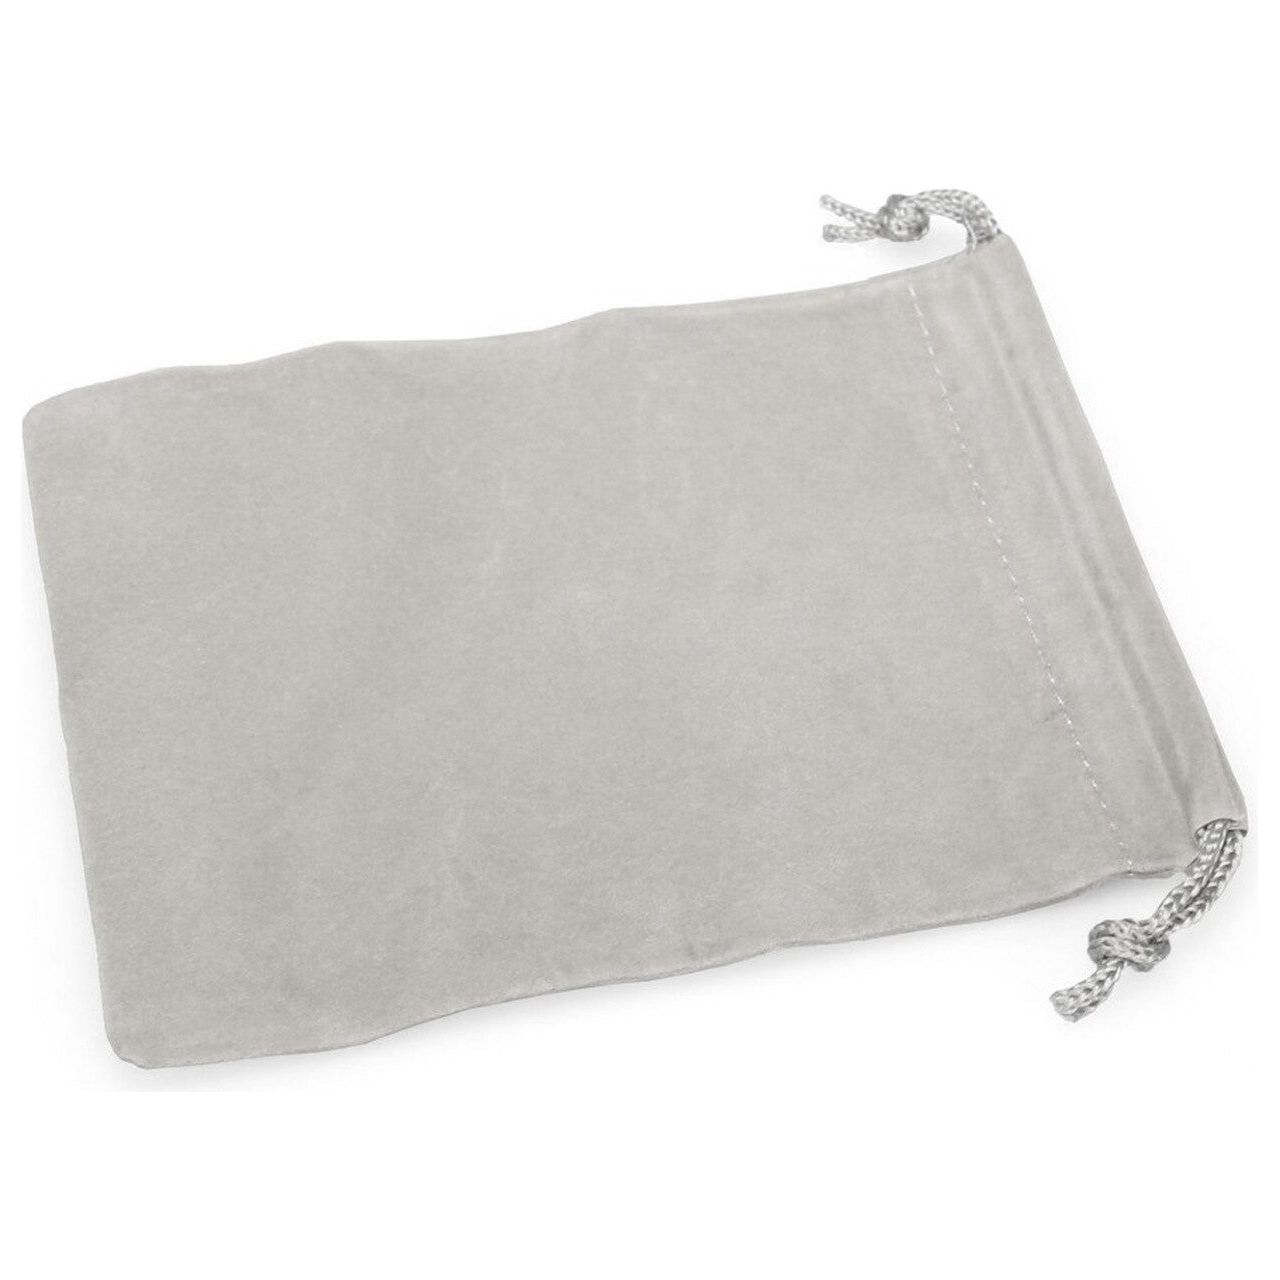 Dice Bag - 4" x 5" Cloth Dice Bag (Grey)